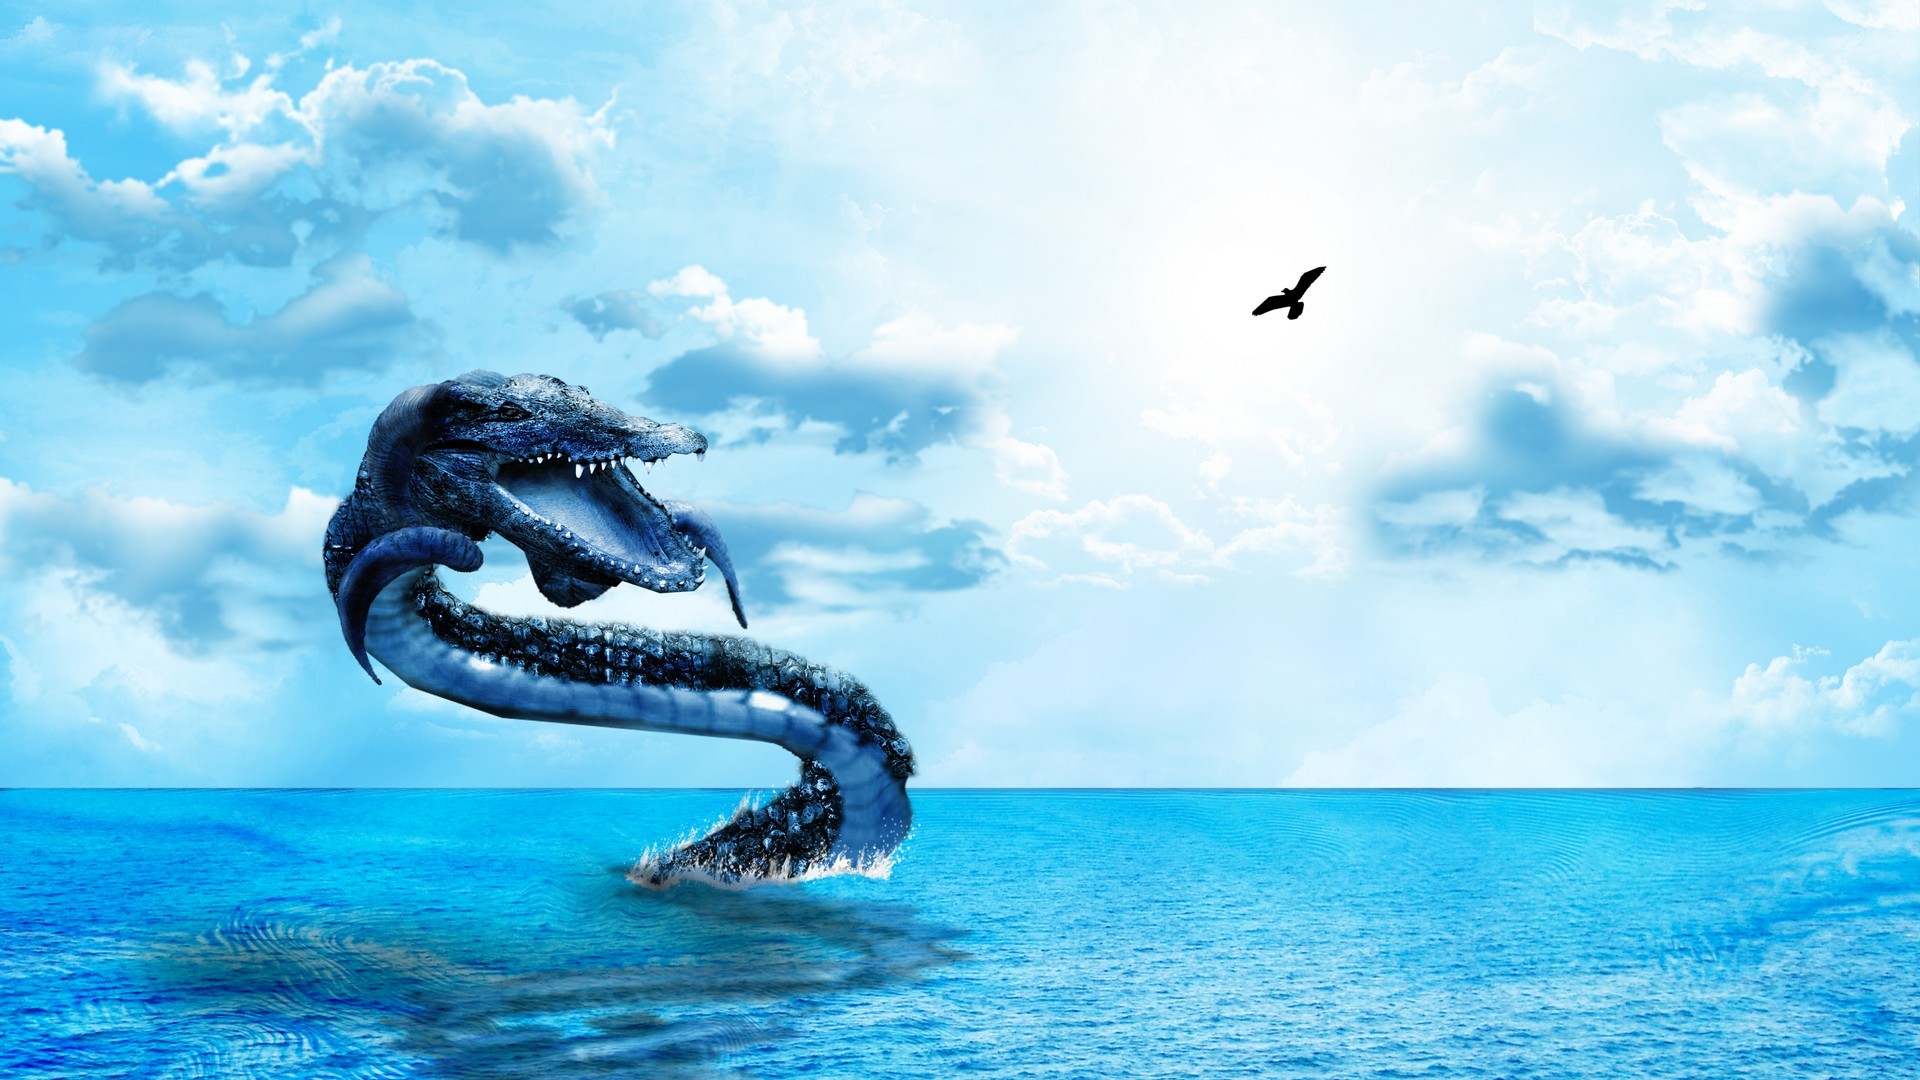 sea serpent wallpaper hd